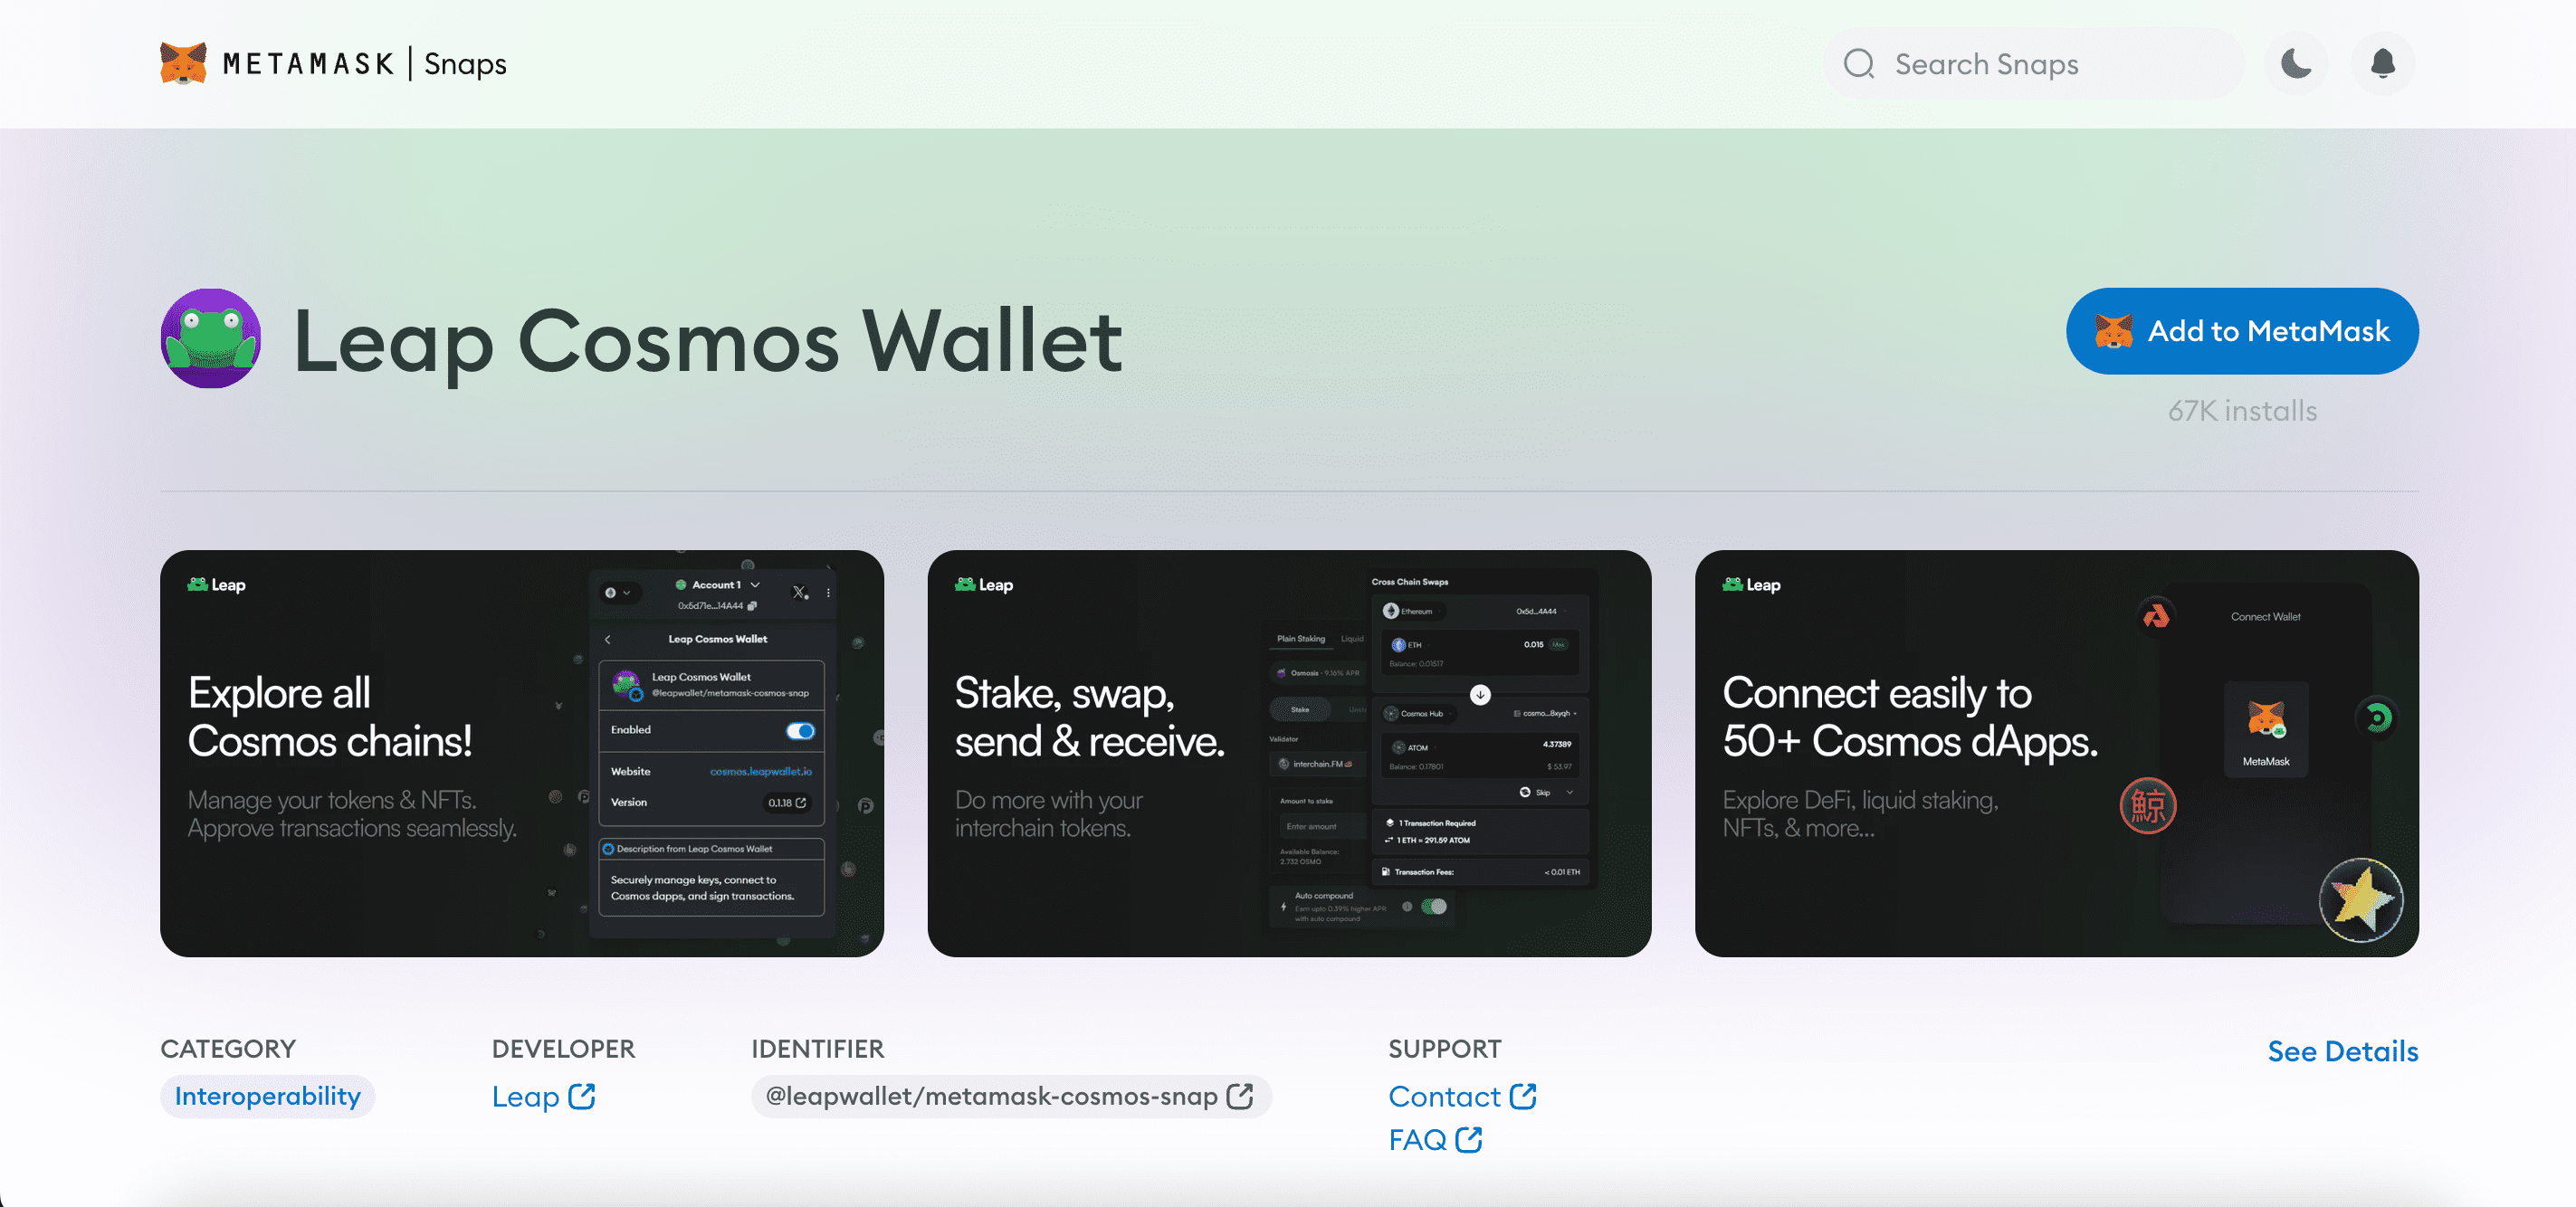 Leap Cosmos Wallet